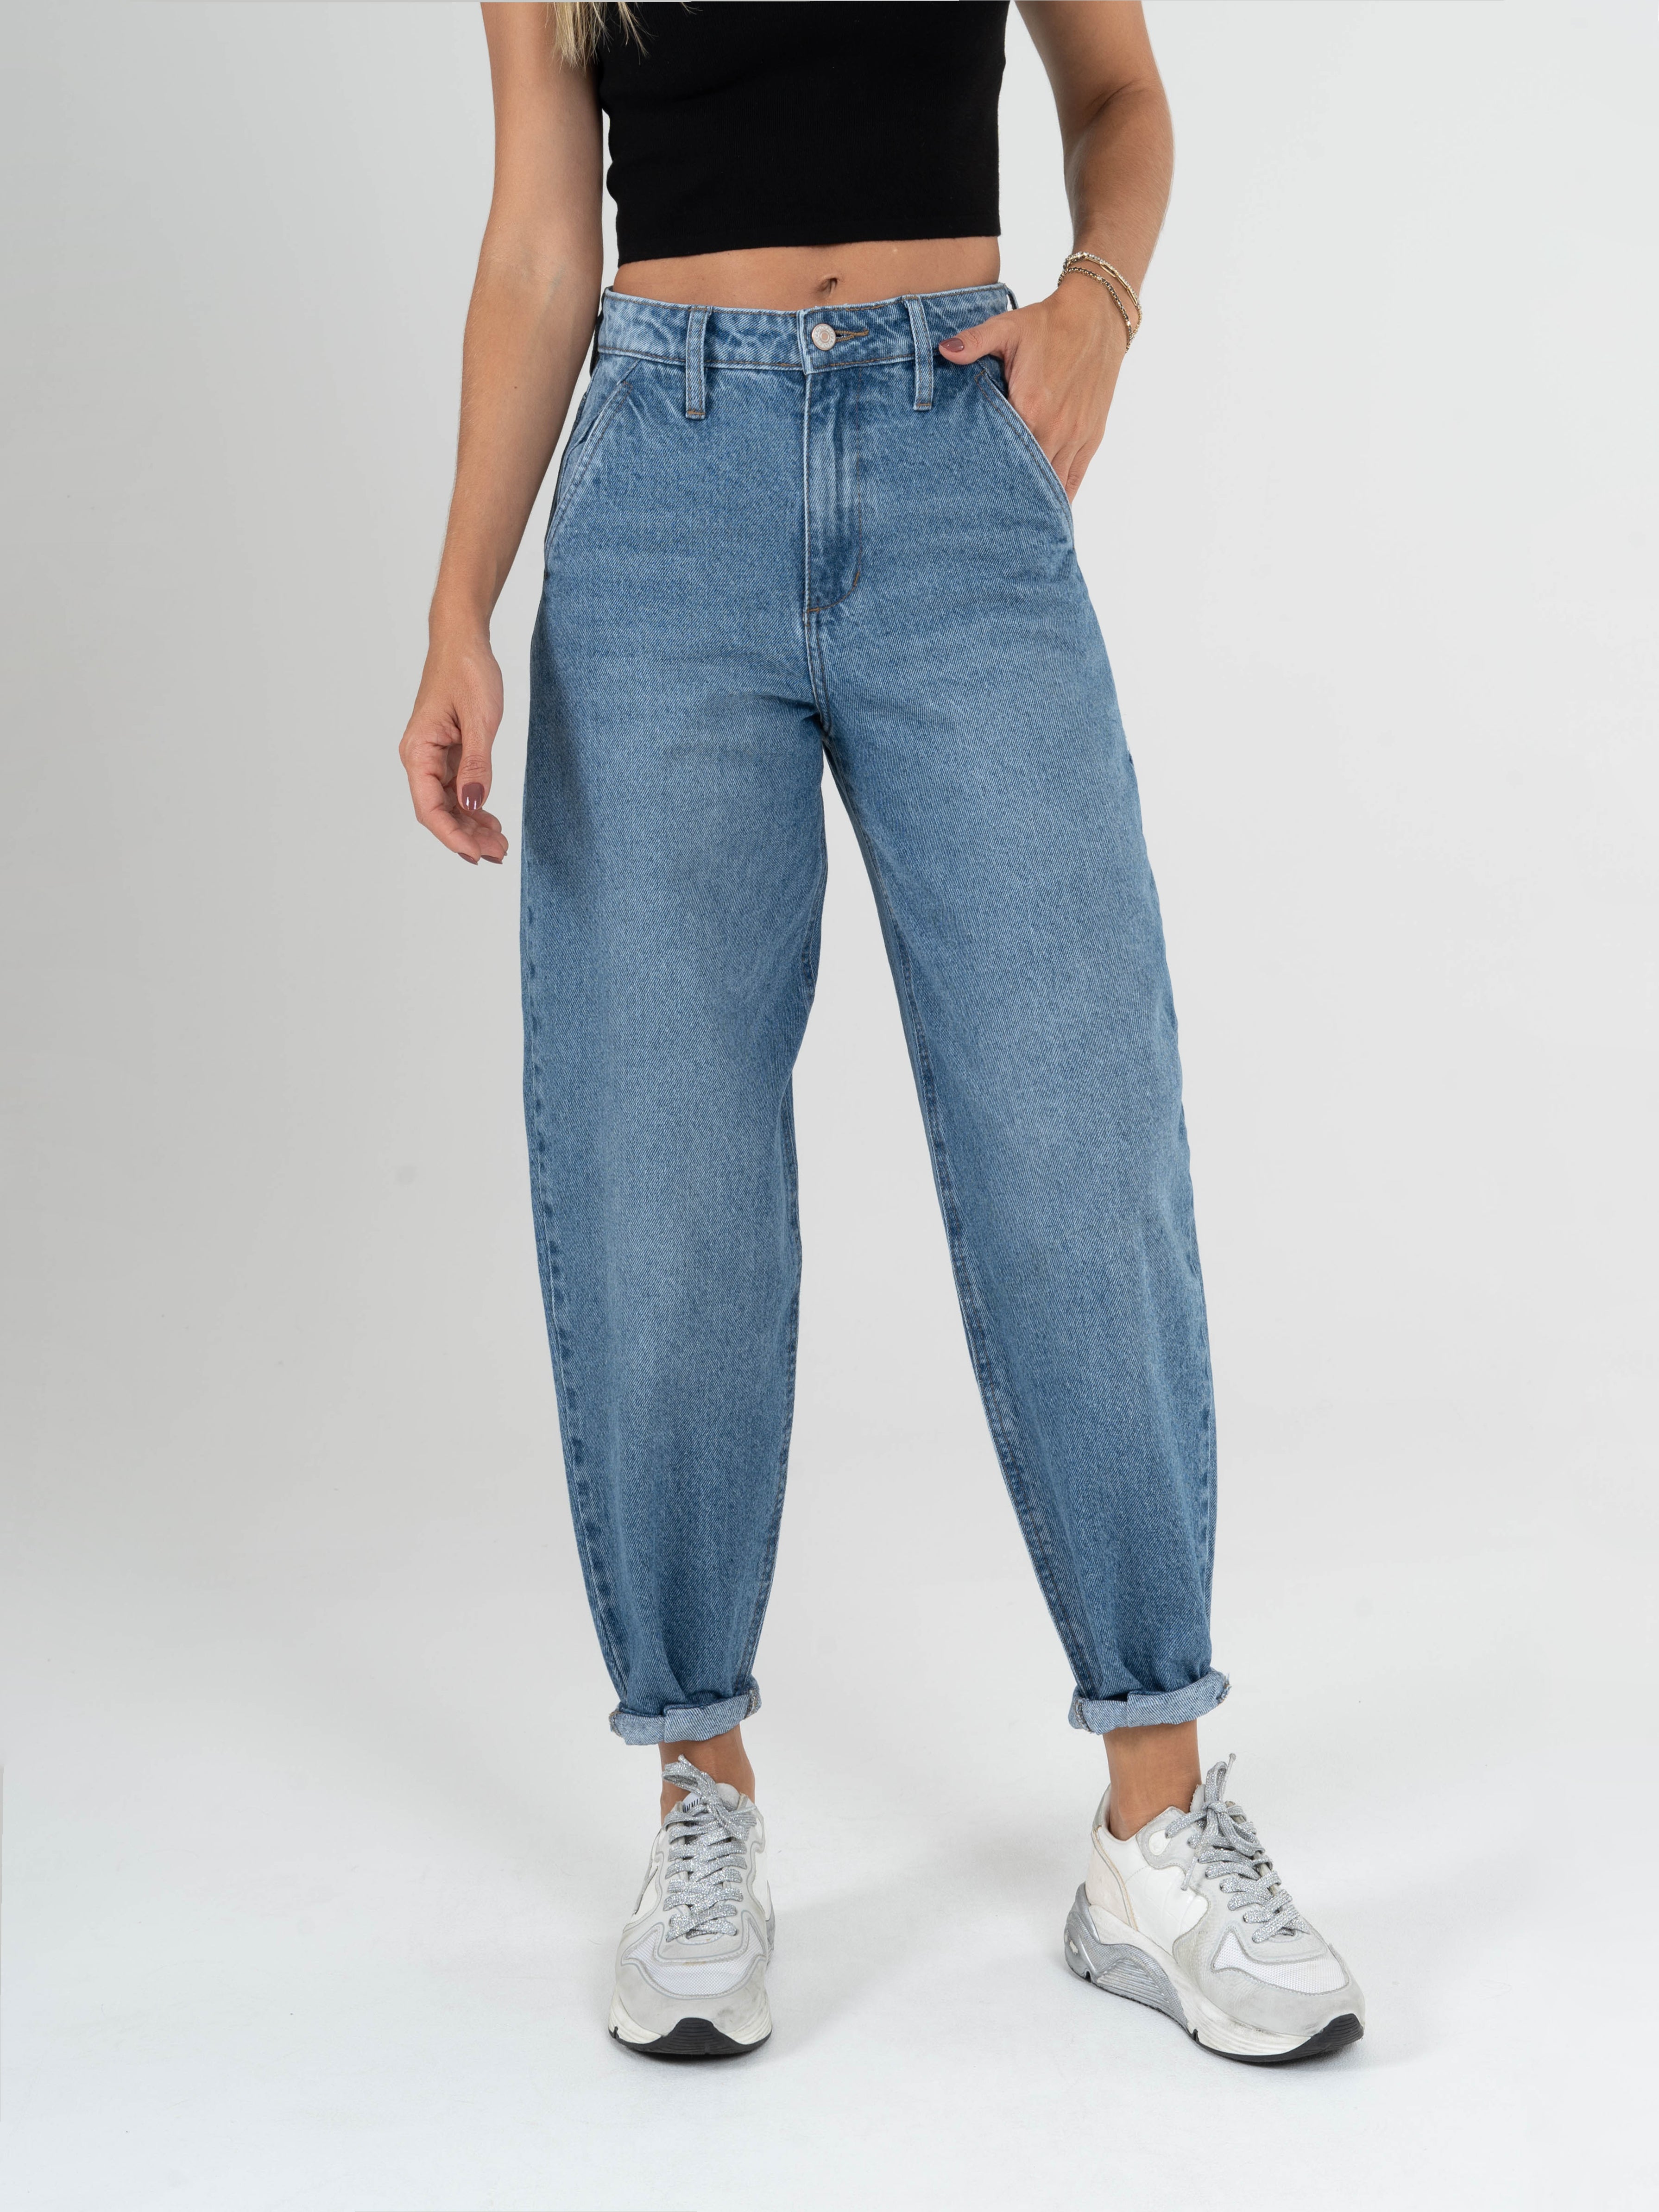 Jeans Tiro Alto Semi-Recto para Mujer Bombay BB-75